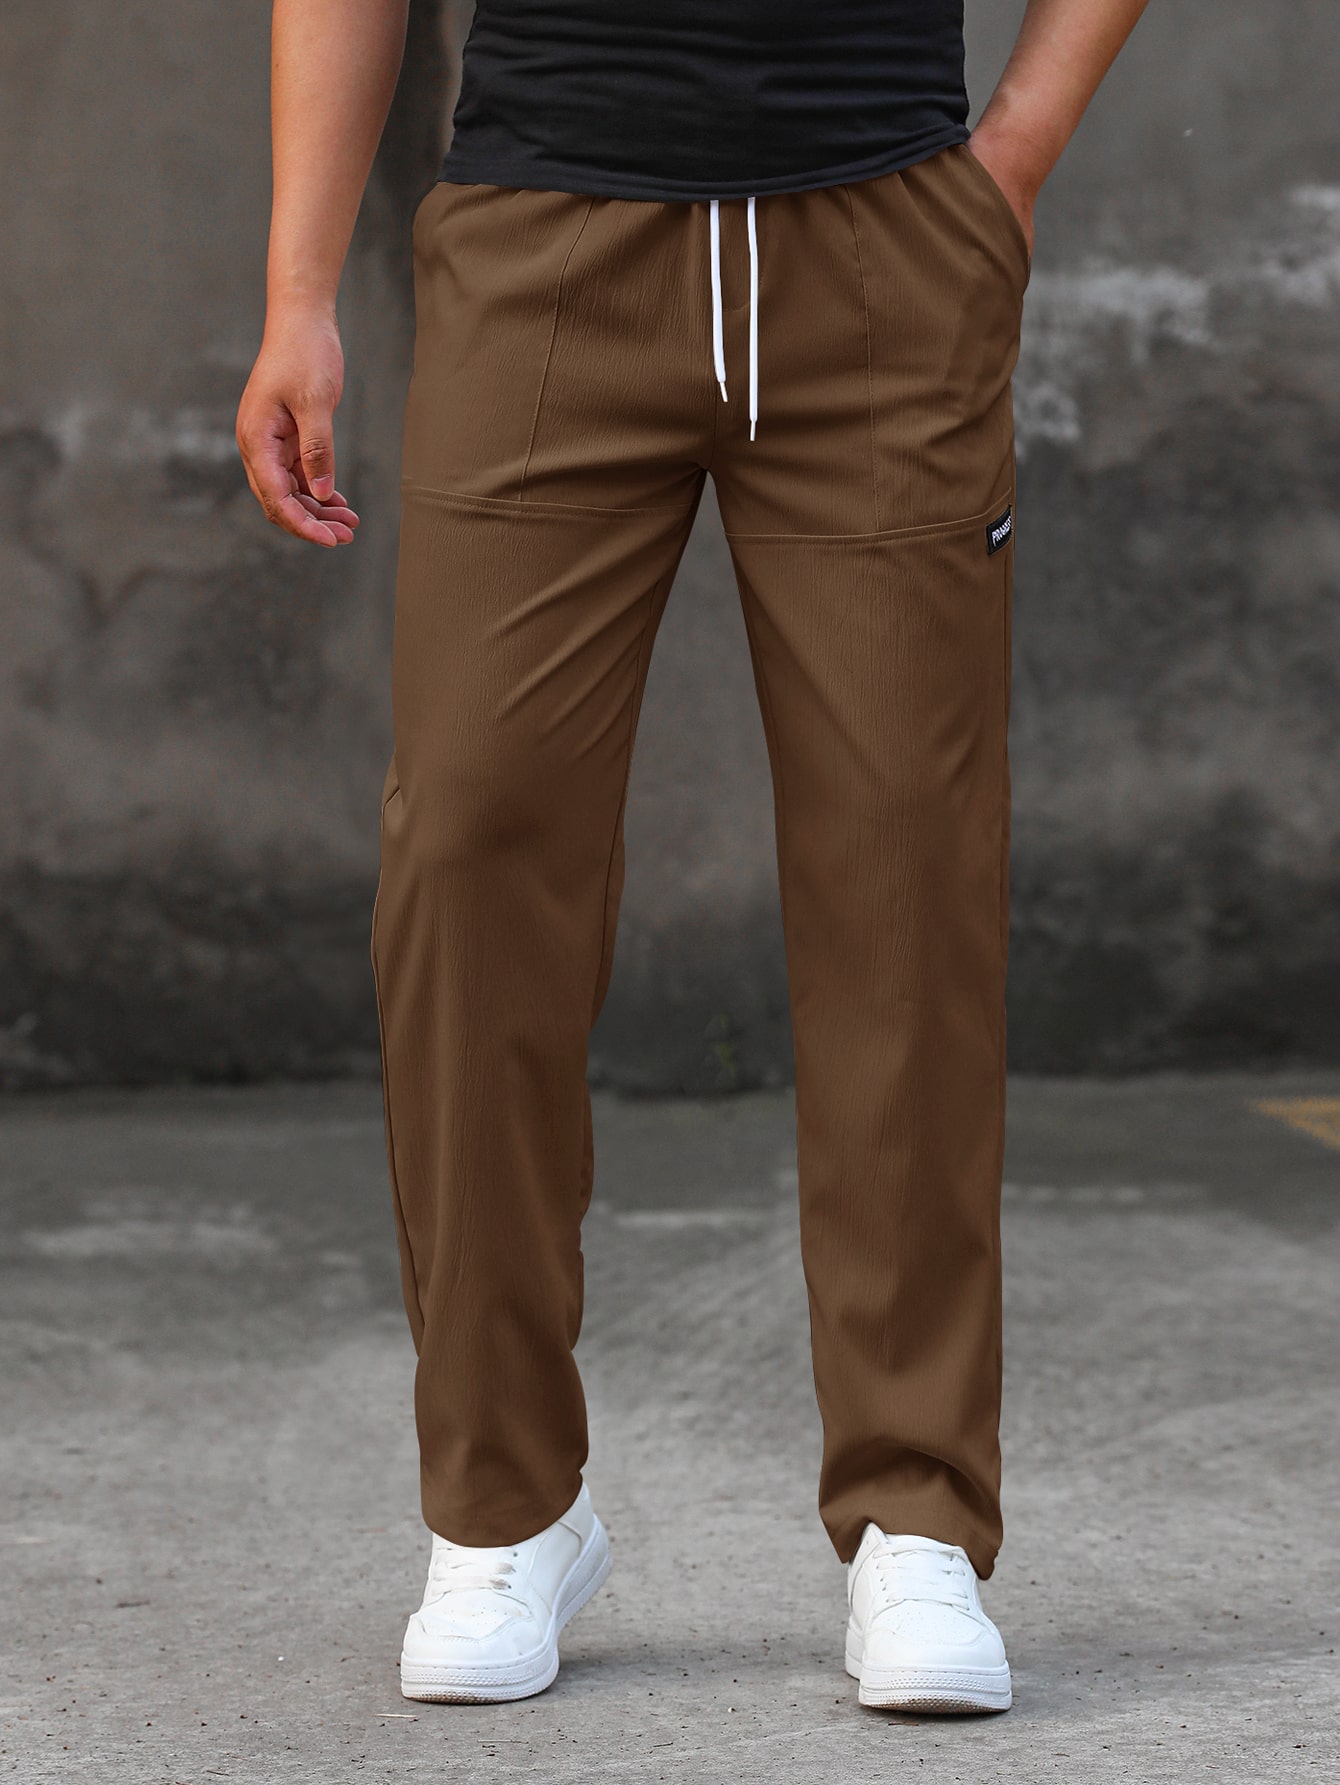 Мужские прямые брюки свободного кроя Manfinity Homme с буквенными нашивками и шнурком на талии, кофейный коричневый